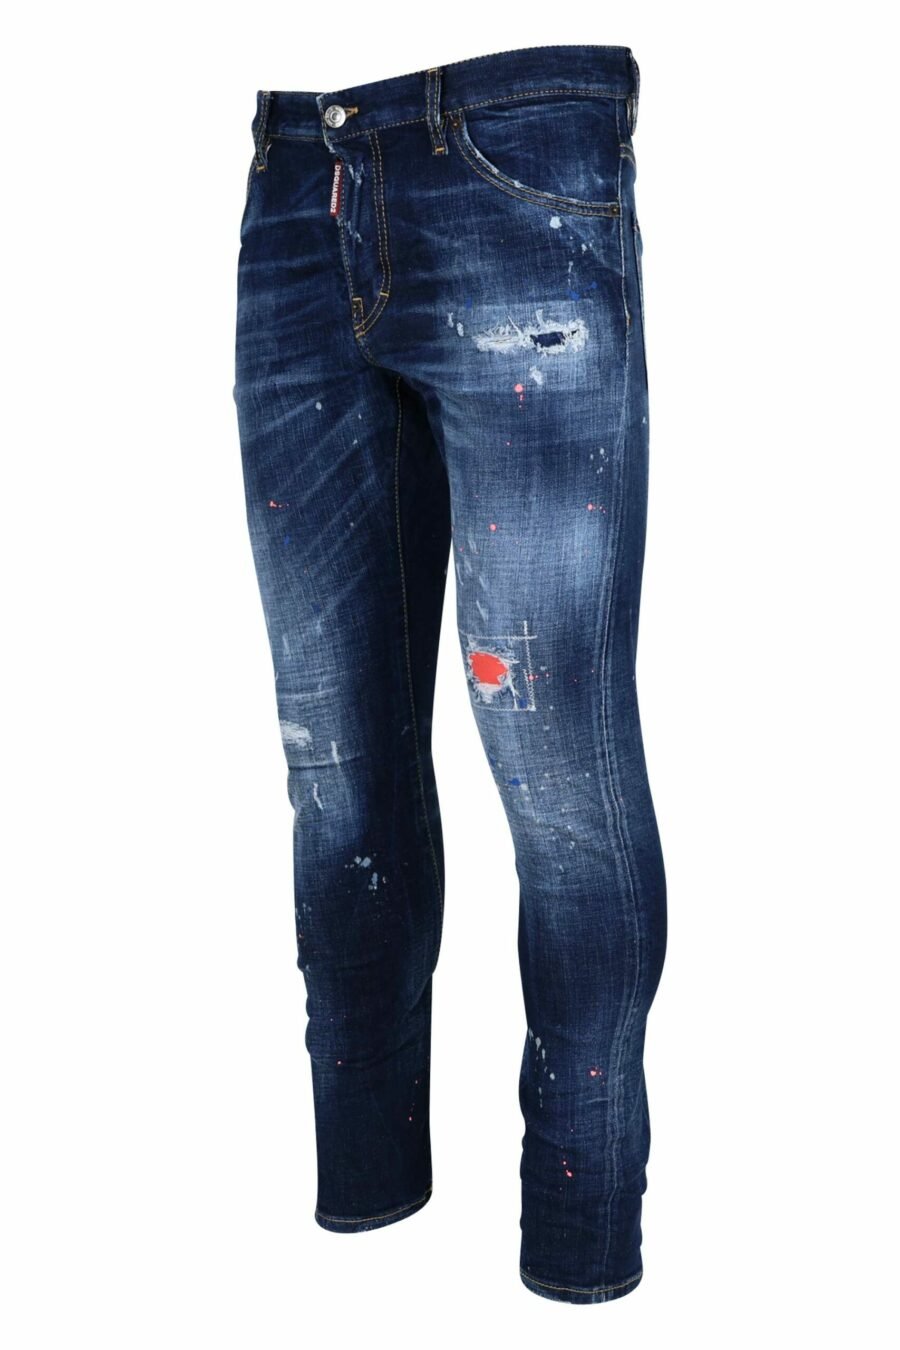 Calças de ganga azuis "sexy twist jean" usadas com tinta laranja - 8054148308292 1 scaled